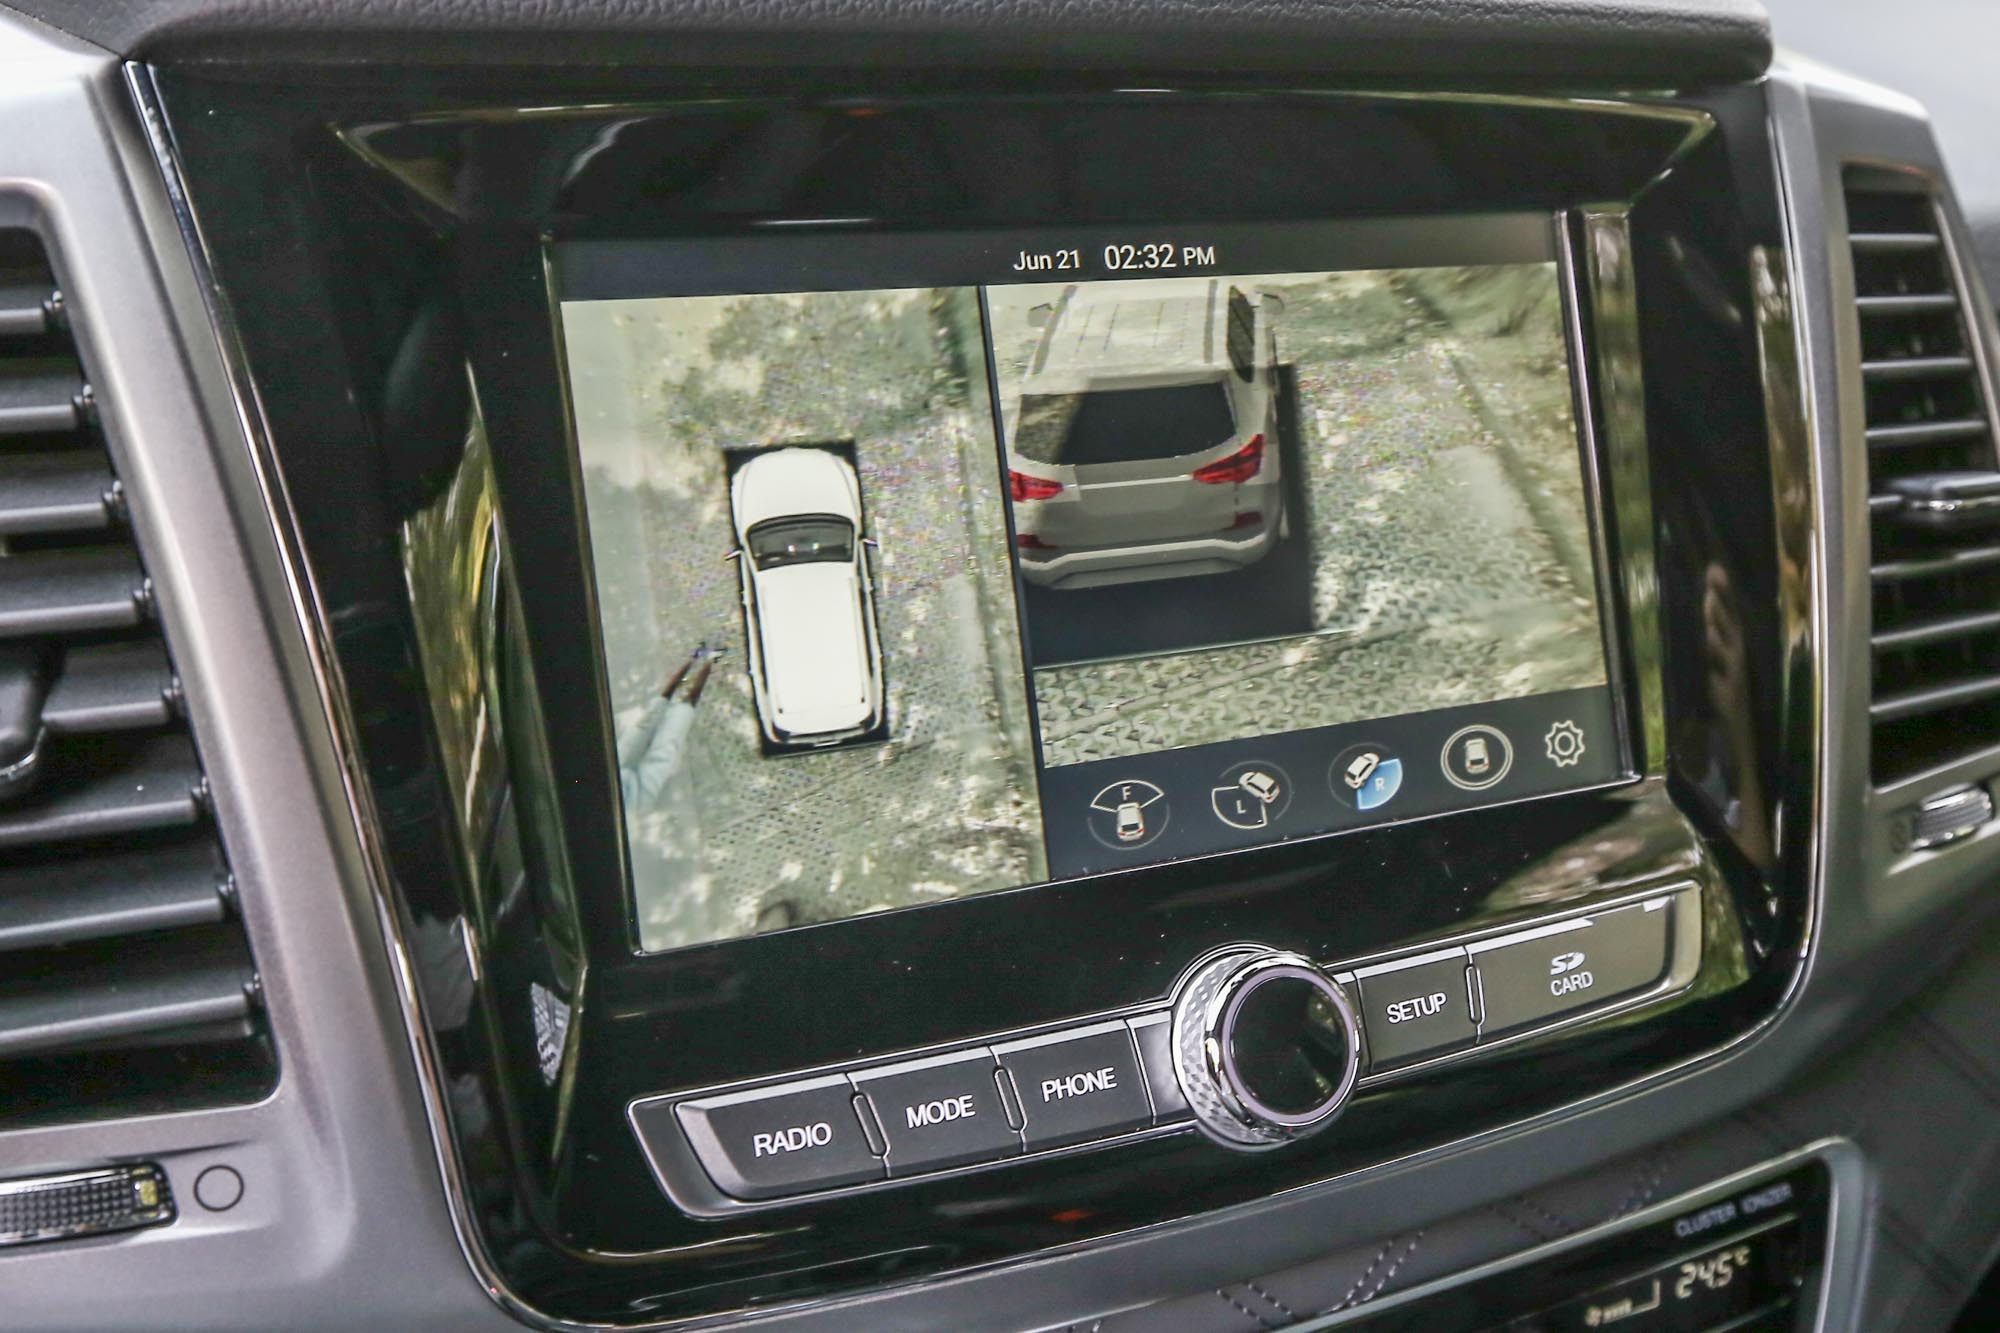 立體環景攝影系統大幅增加駕駛掌握車身周邊相對環境的能力，也可減少碰撞憾事發生。